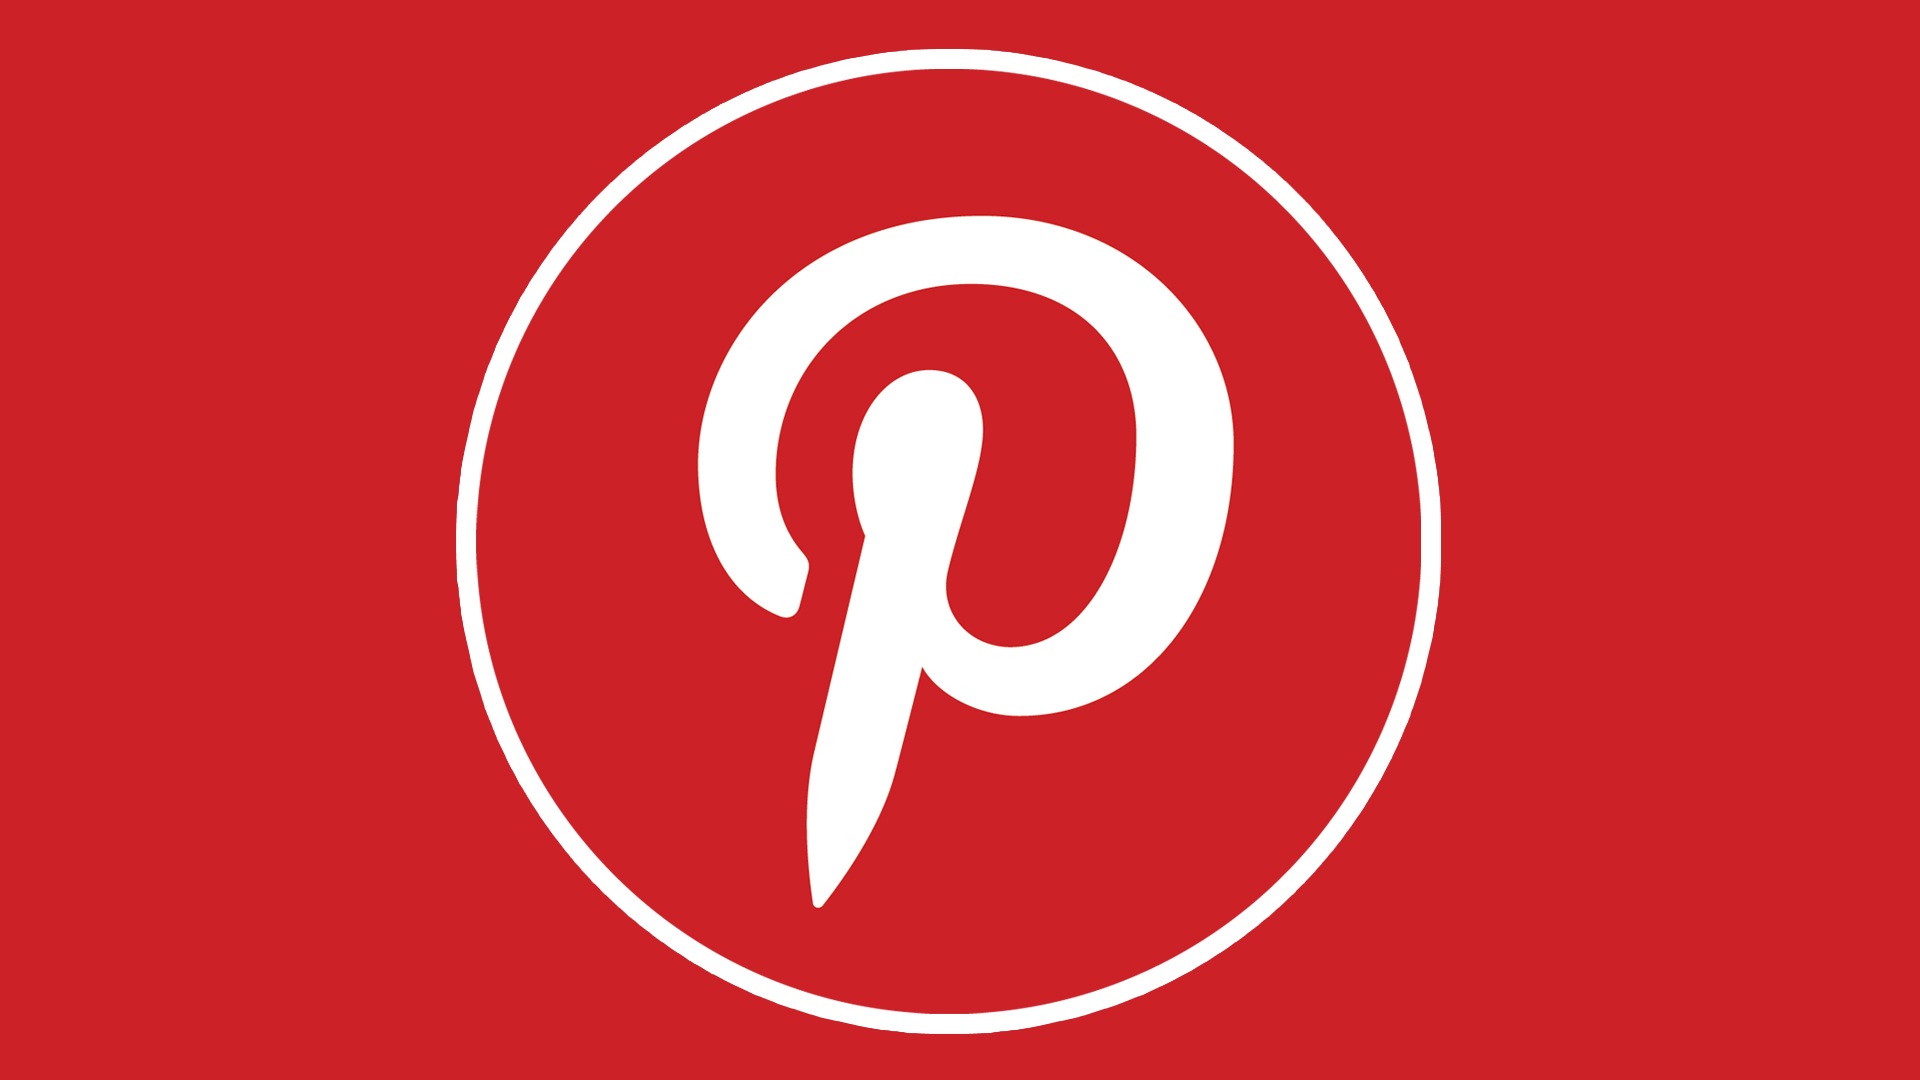 Logo Pinterest, histoire, image de symbole et emblème